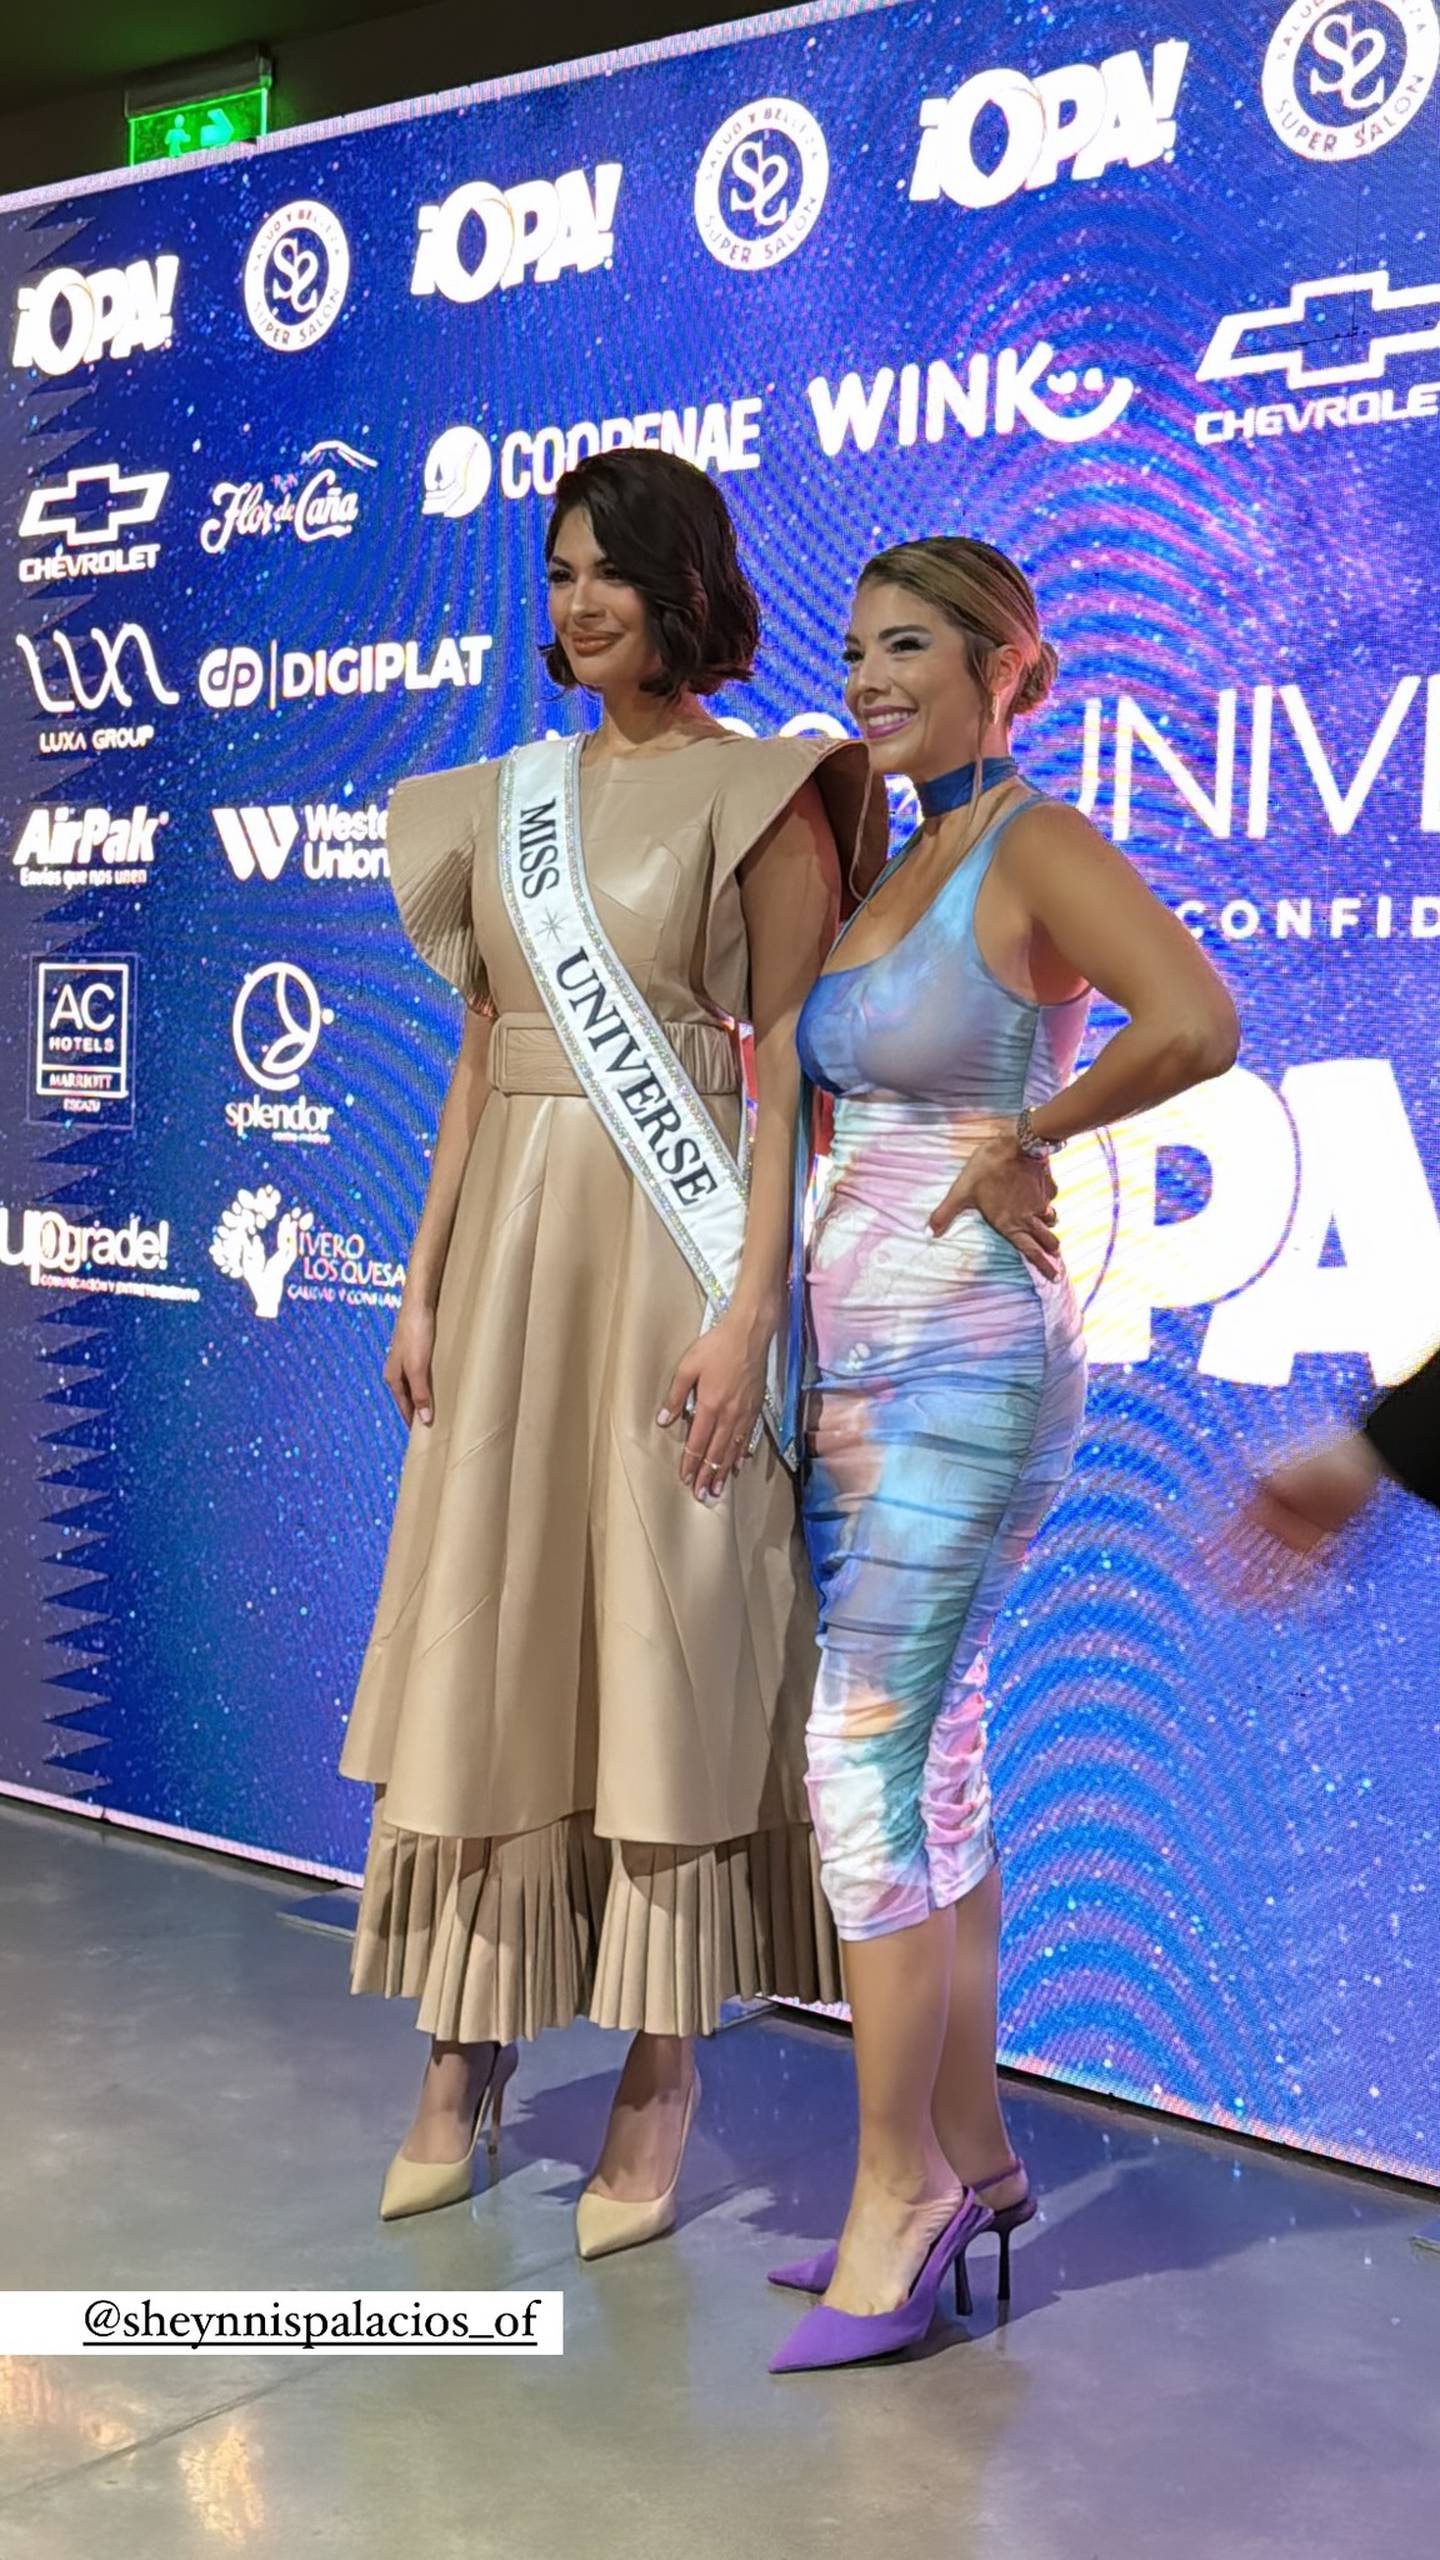 La modelo Marianela Valverde y la miss Universo Sheynnis Palacios